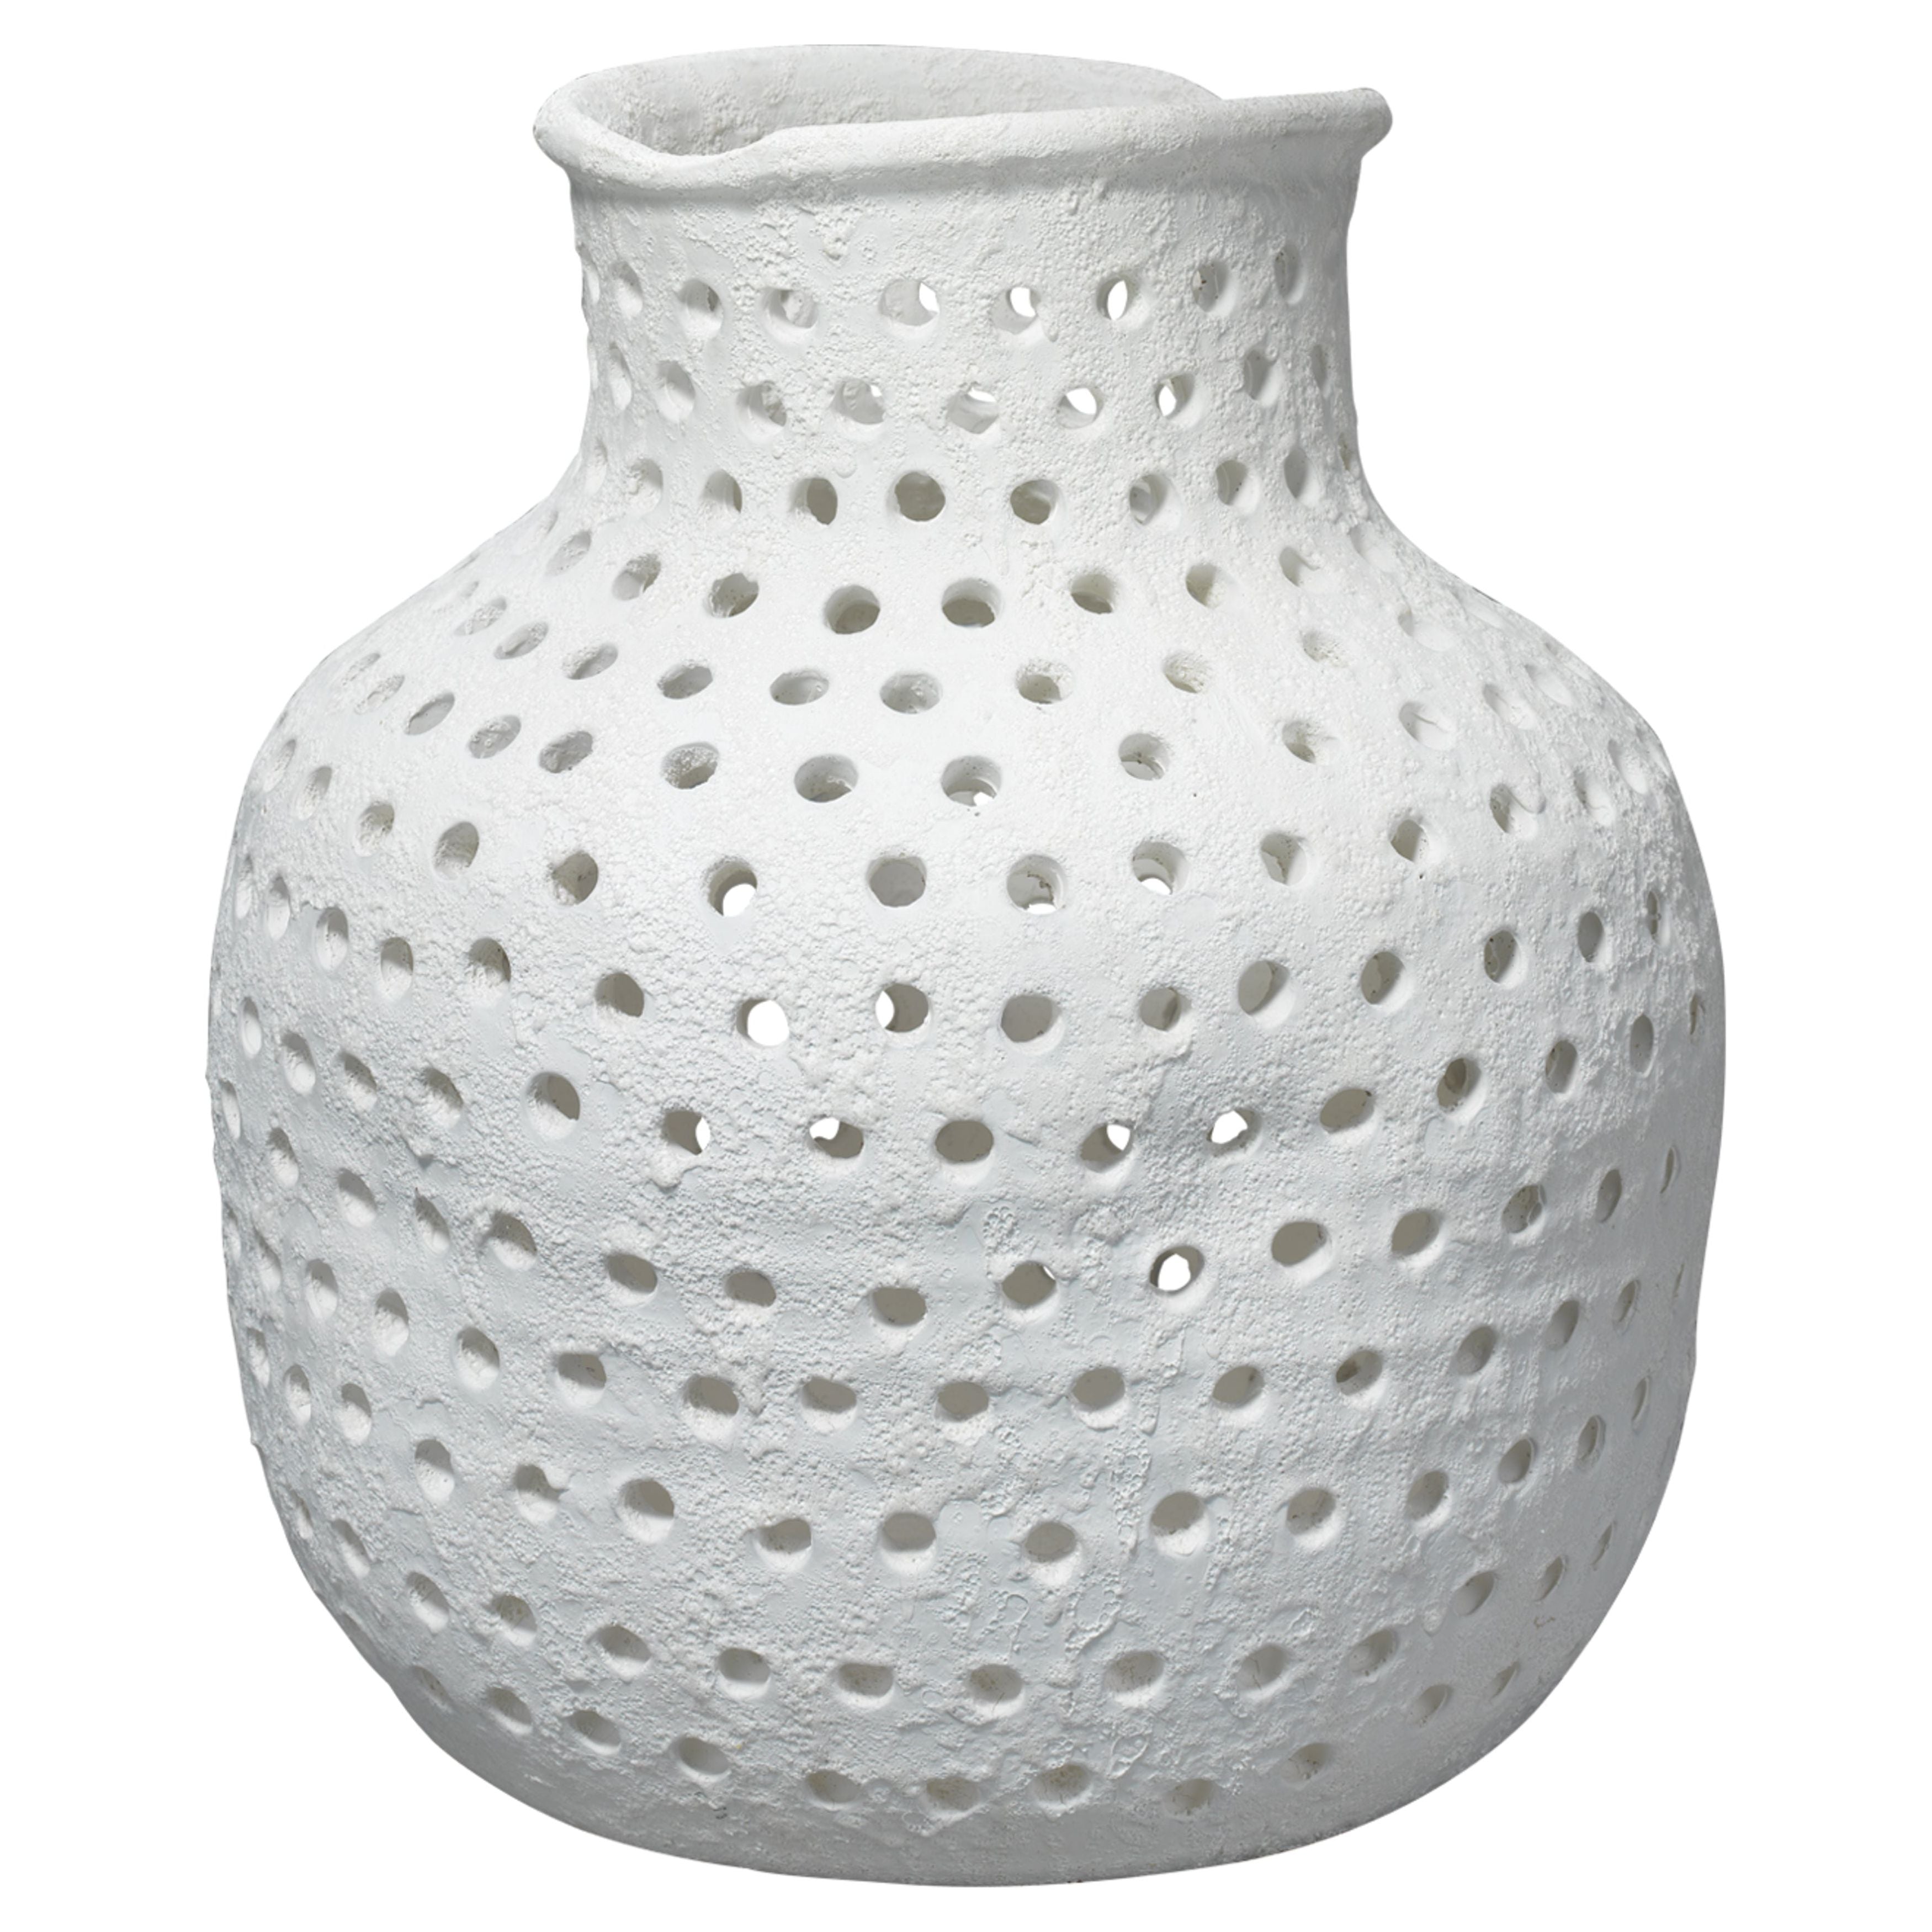 Jamie Young Company - 7PORO-VAWH - Porous Vase - Porous - White